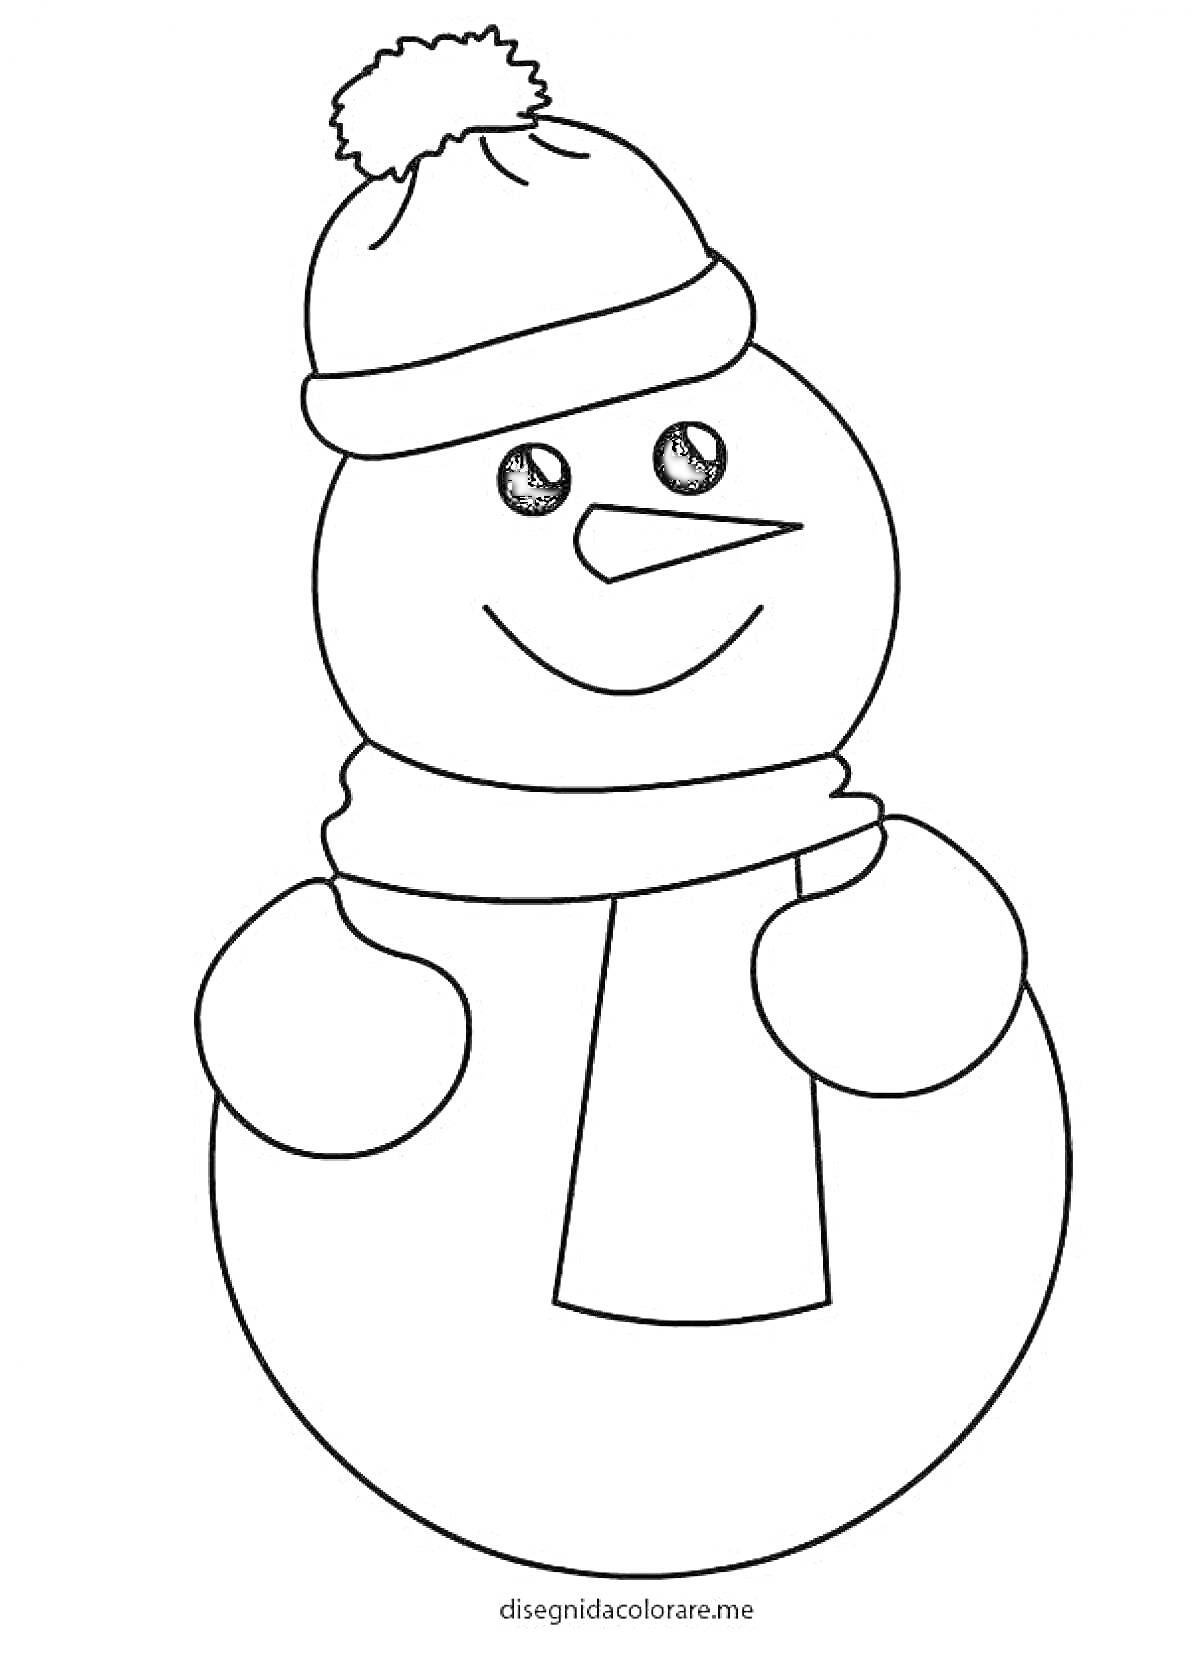 Раскраска Снеговик в шапке с помпоном и шарфом